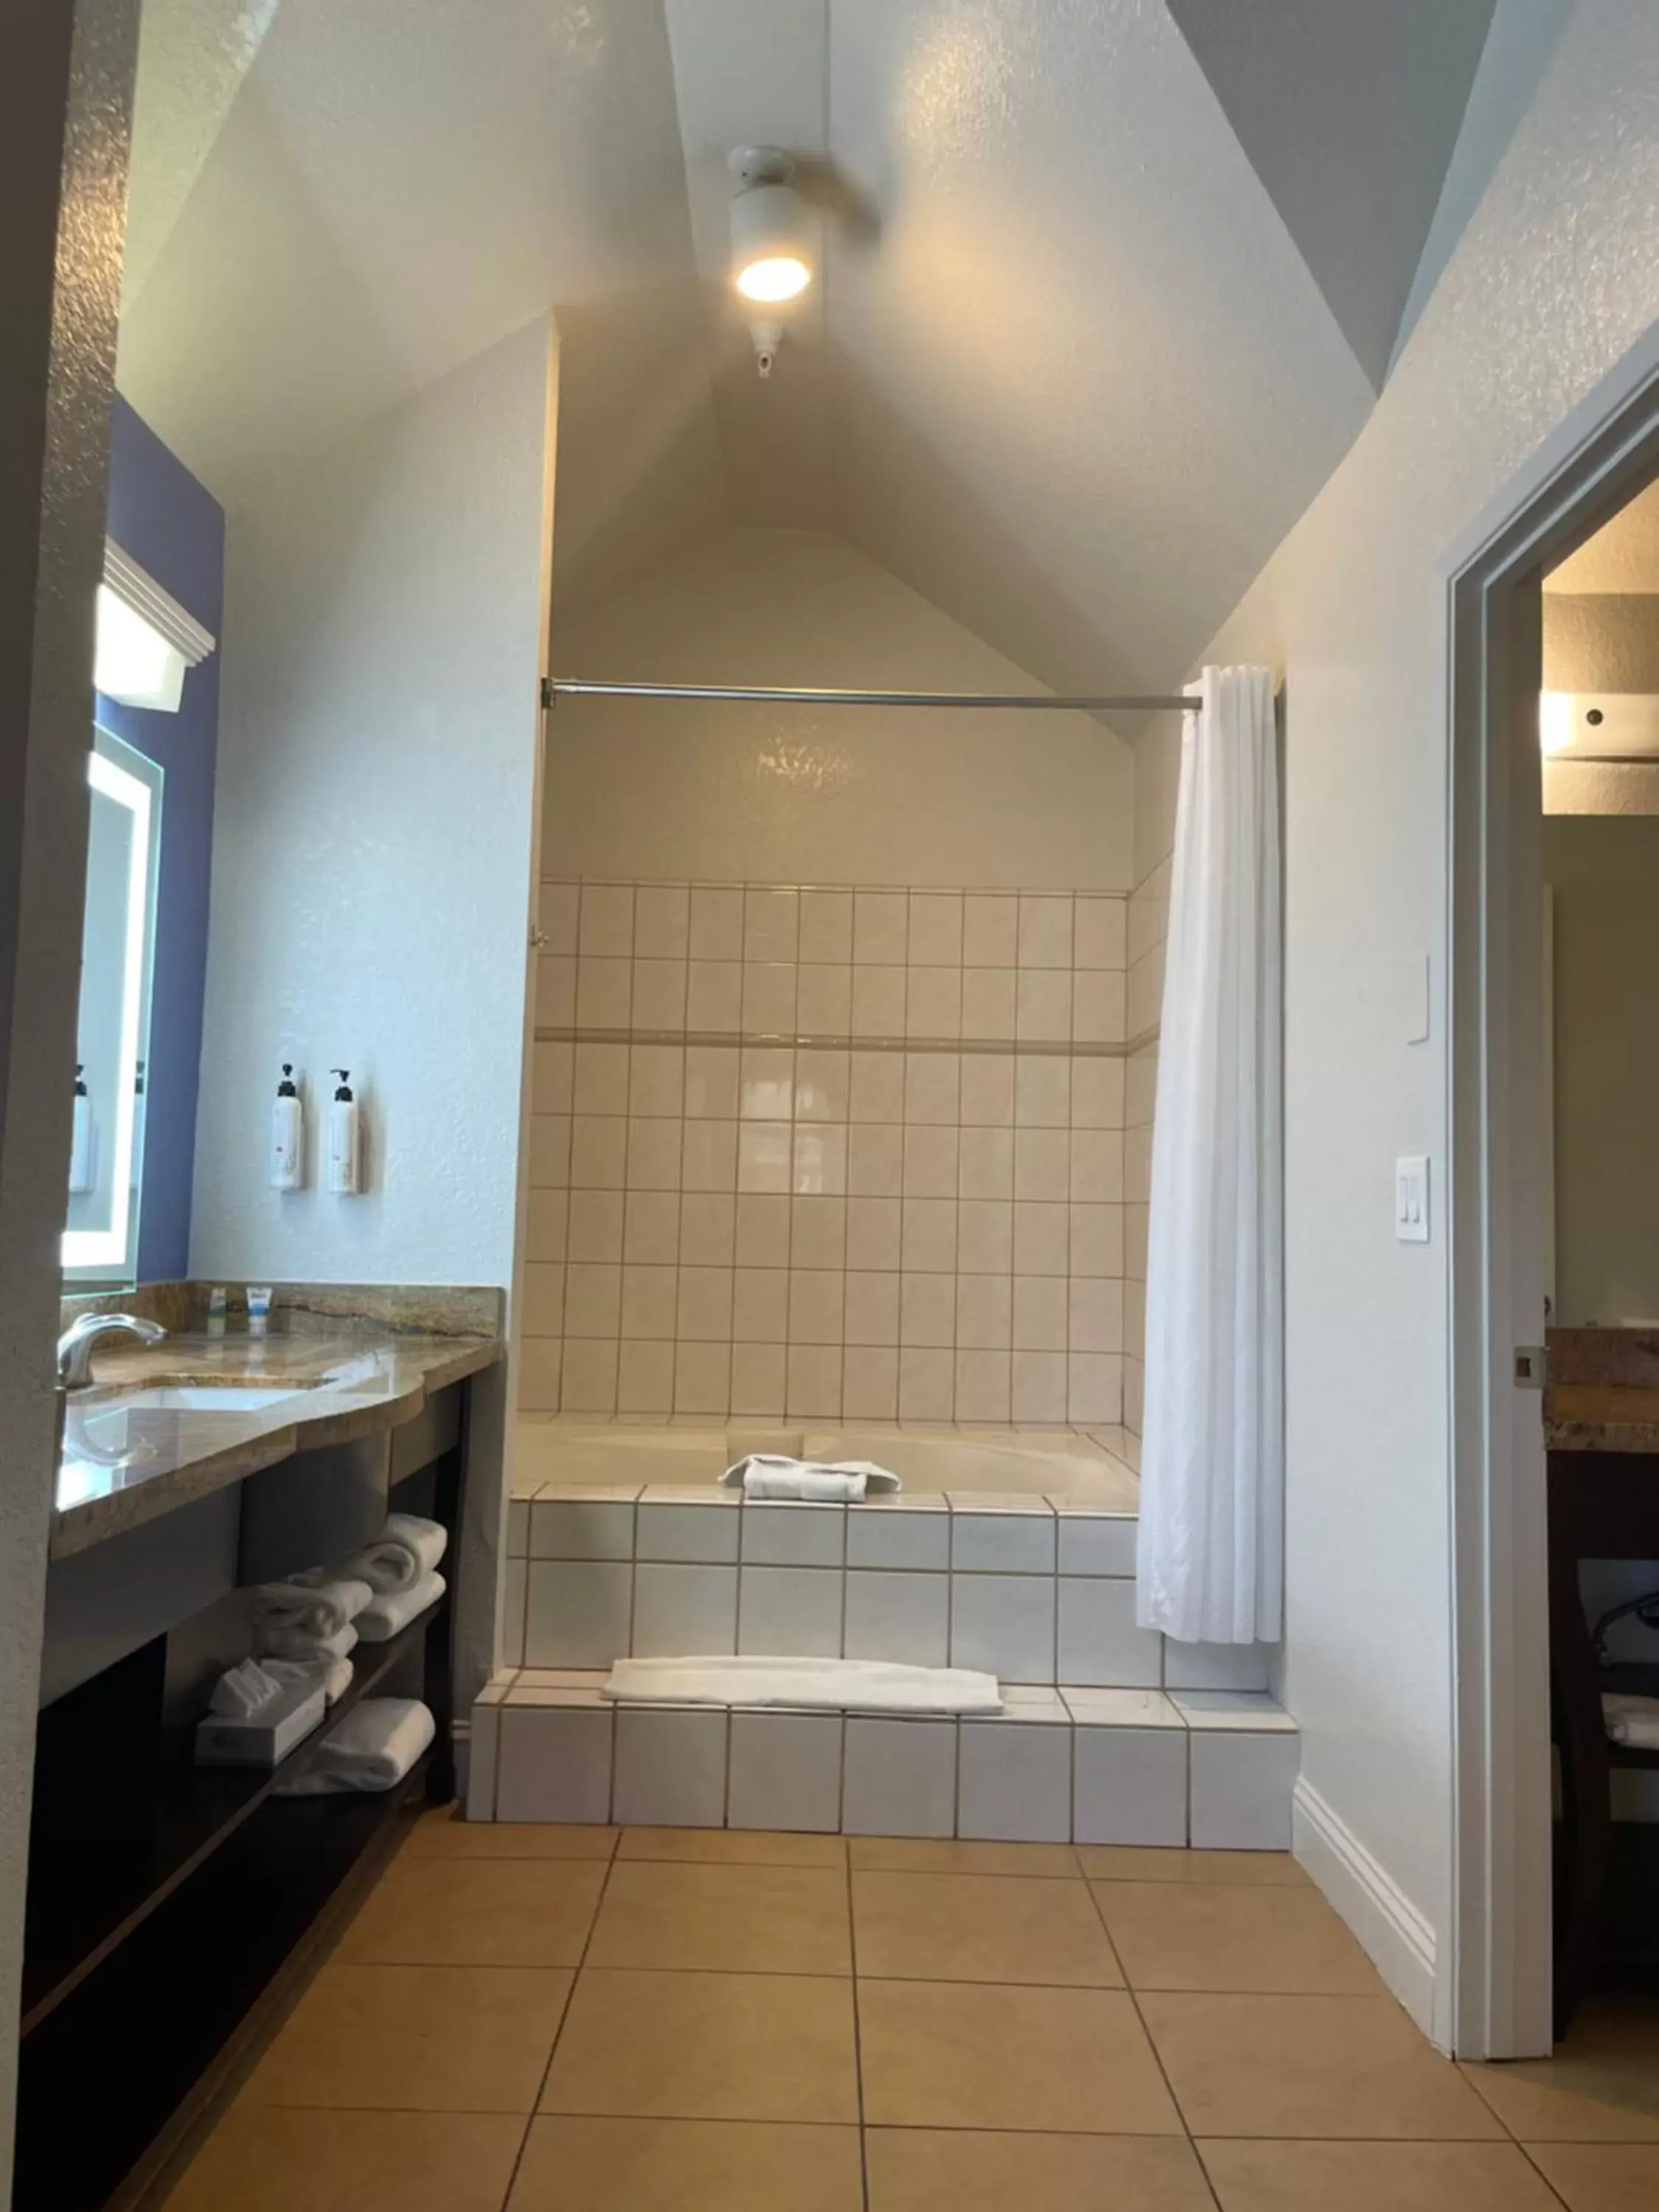 Bathroom in Hotel Solares